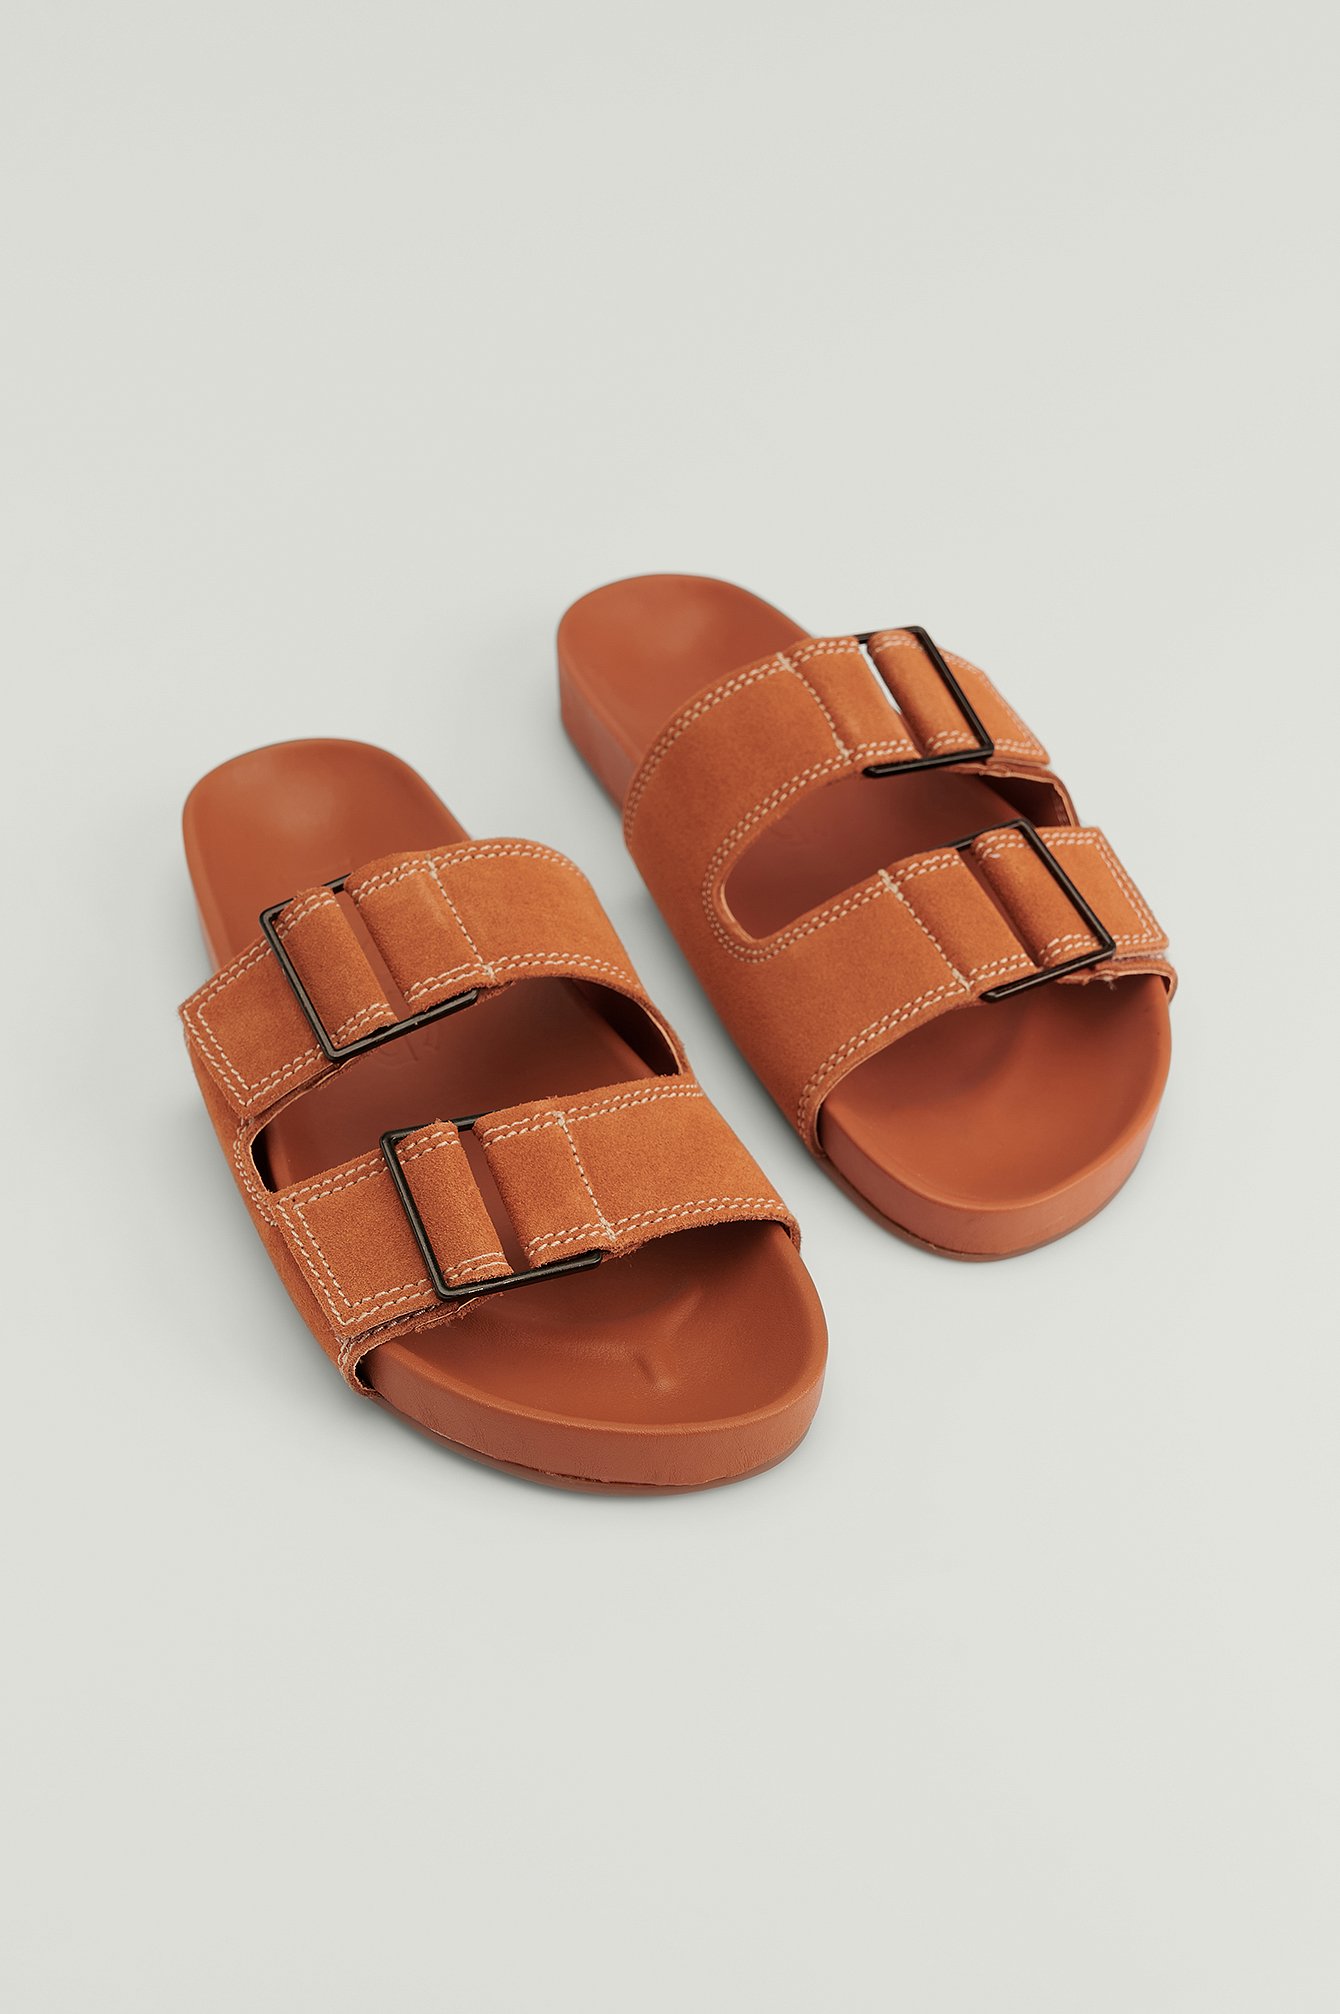 Orange Sandals Ceuta